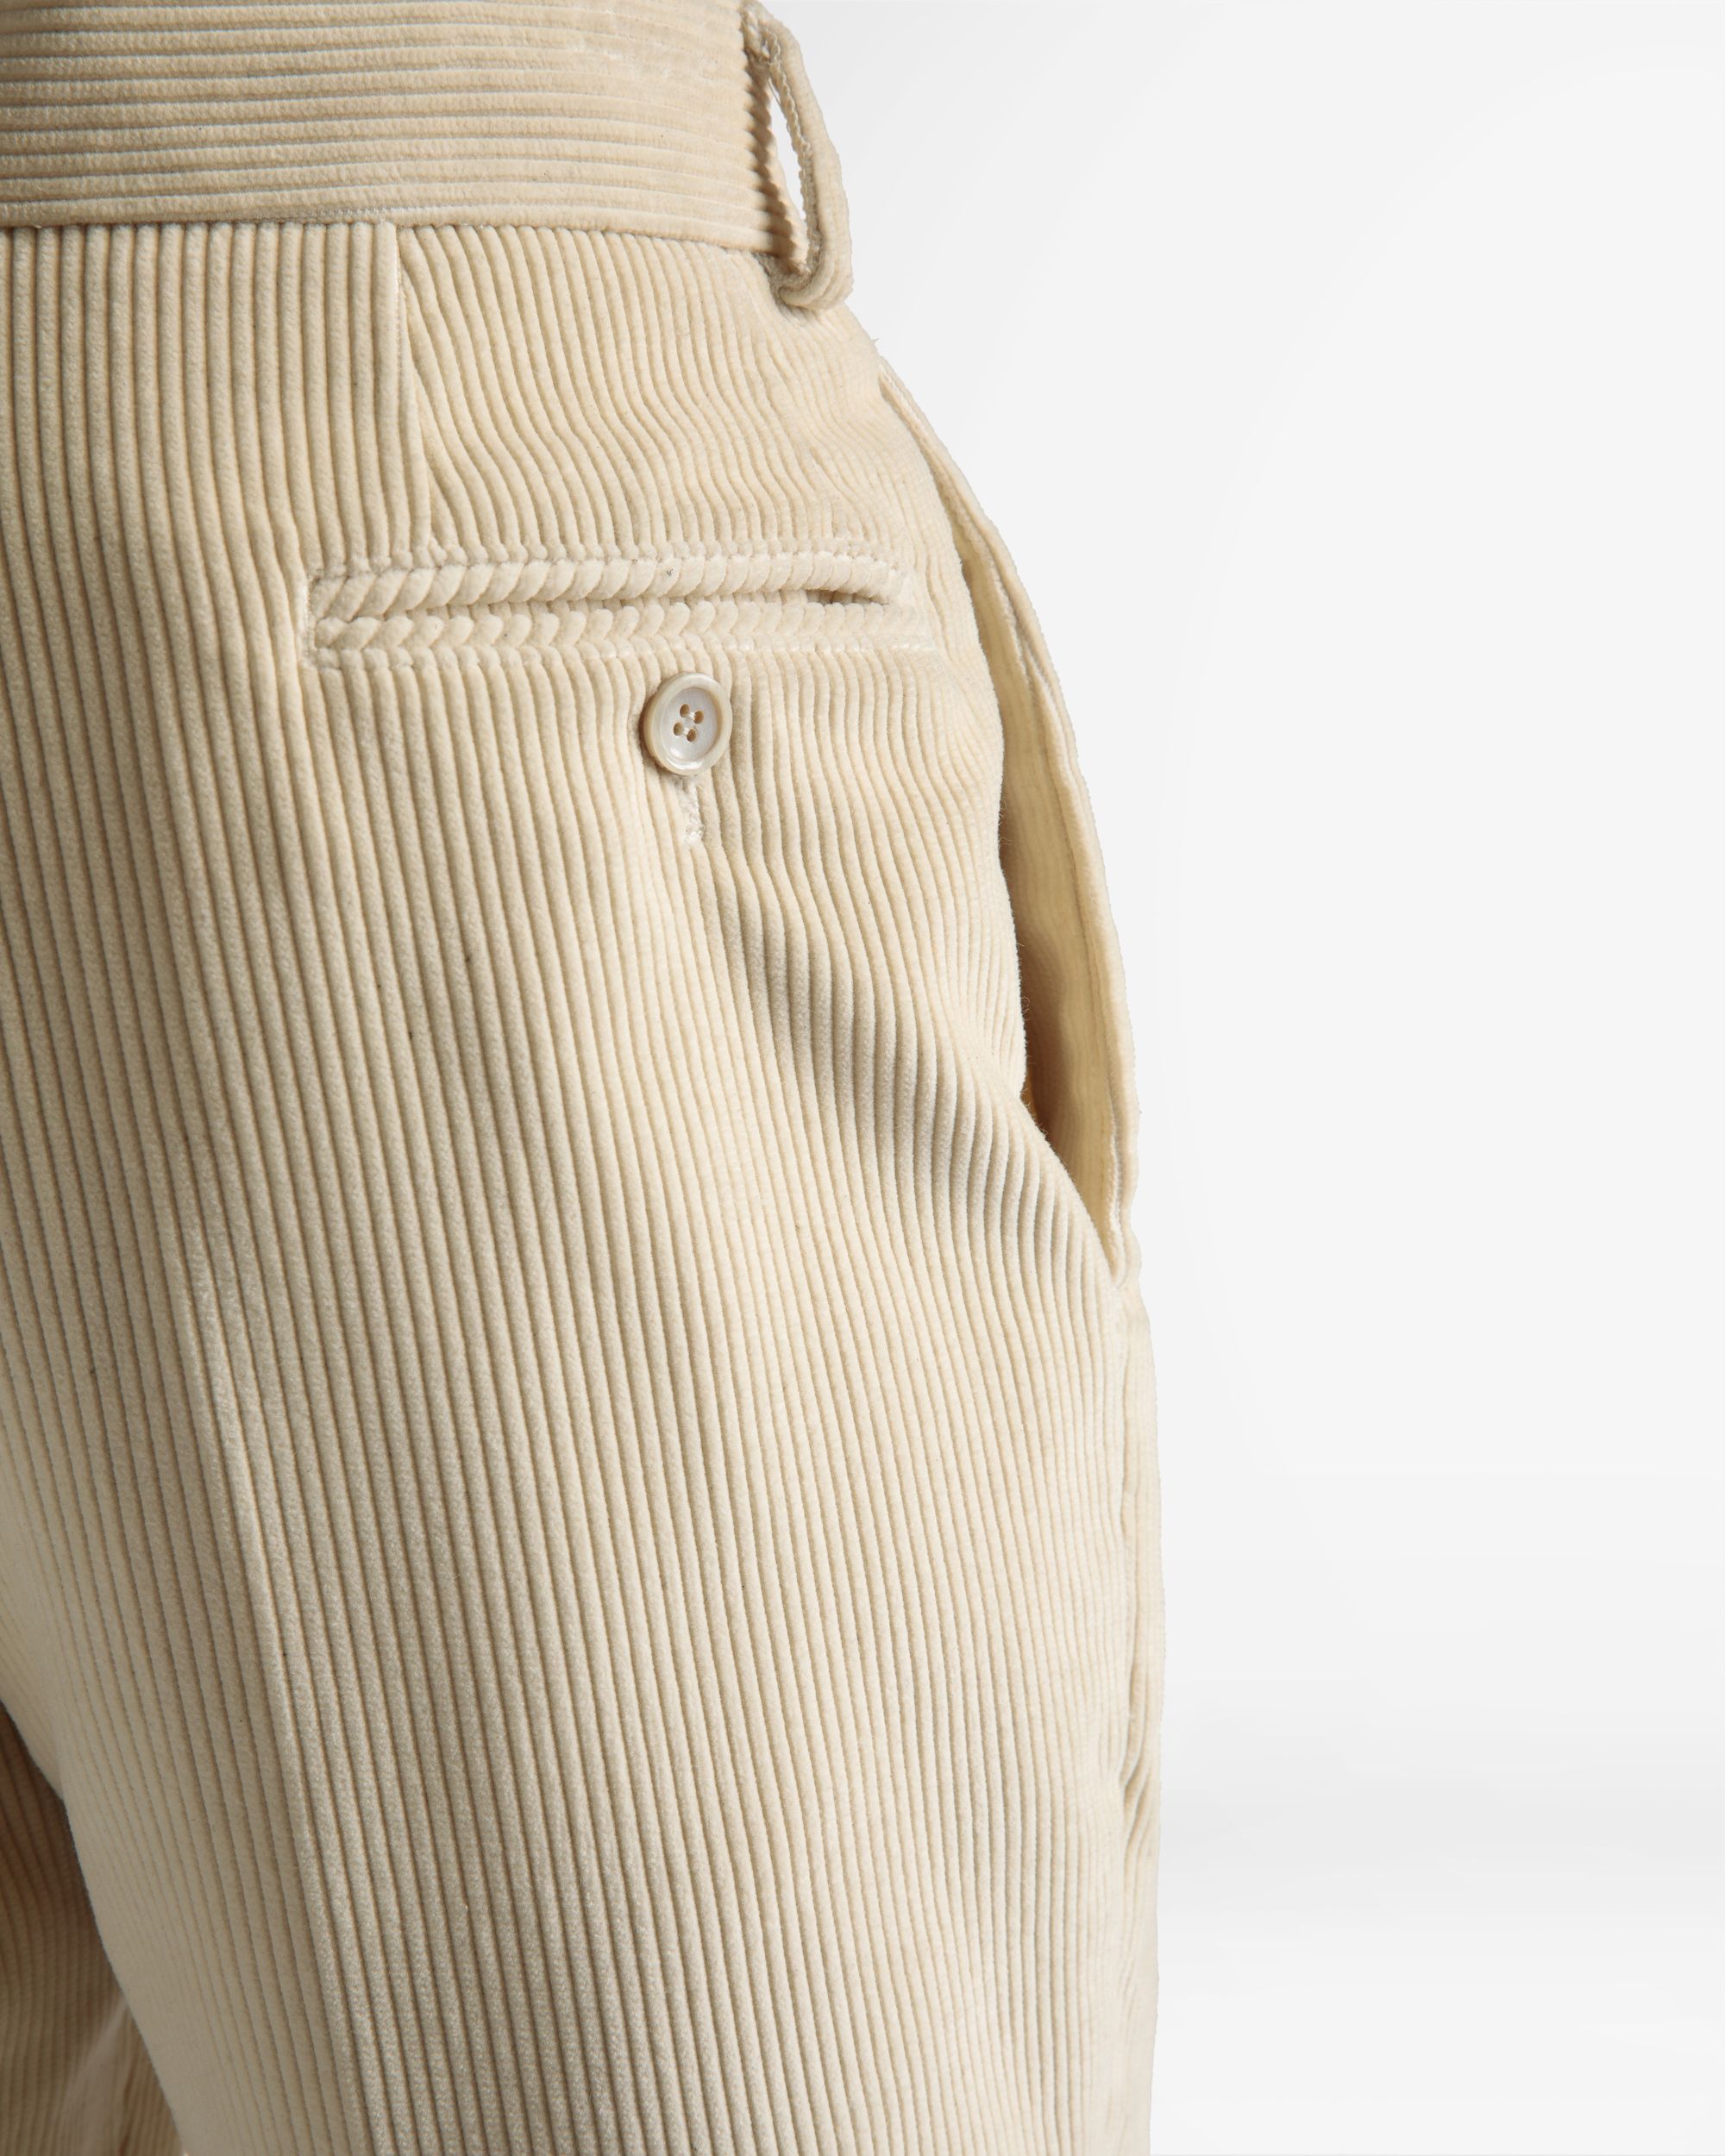 Formelle Hose mit geradem Bein | Hose für Herren | Wolle in Elfenbein | Bally | Model getragen Detail